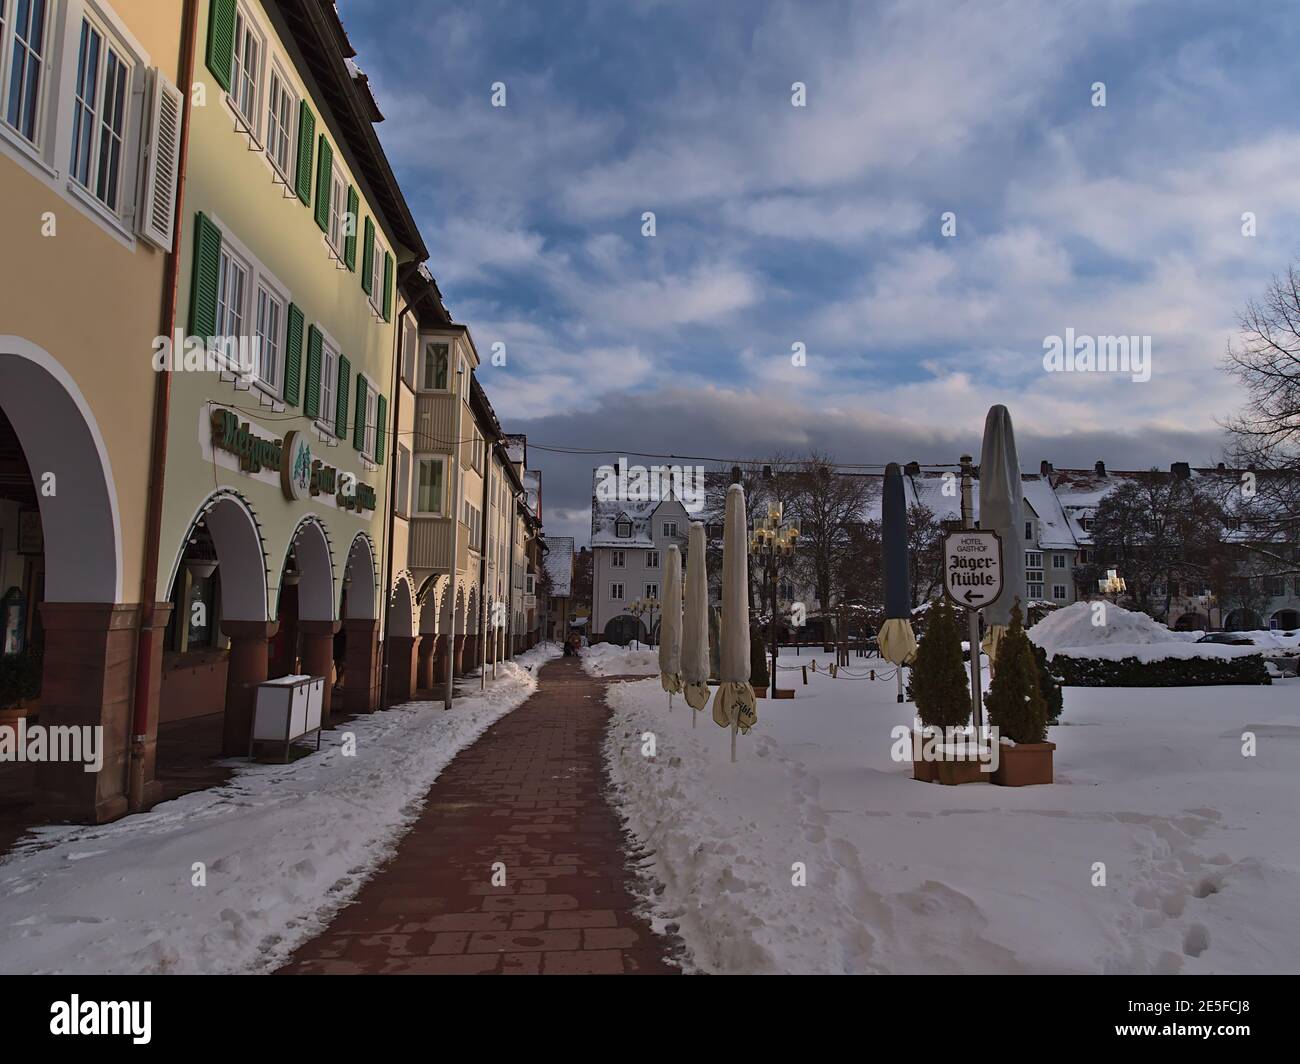 Bella vista della piazza storica della città di destinazione turistica Freudenstadt, Foresta Nera coperta di neve con portici e vecchi edifici in inverno. Foto Stock